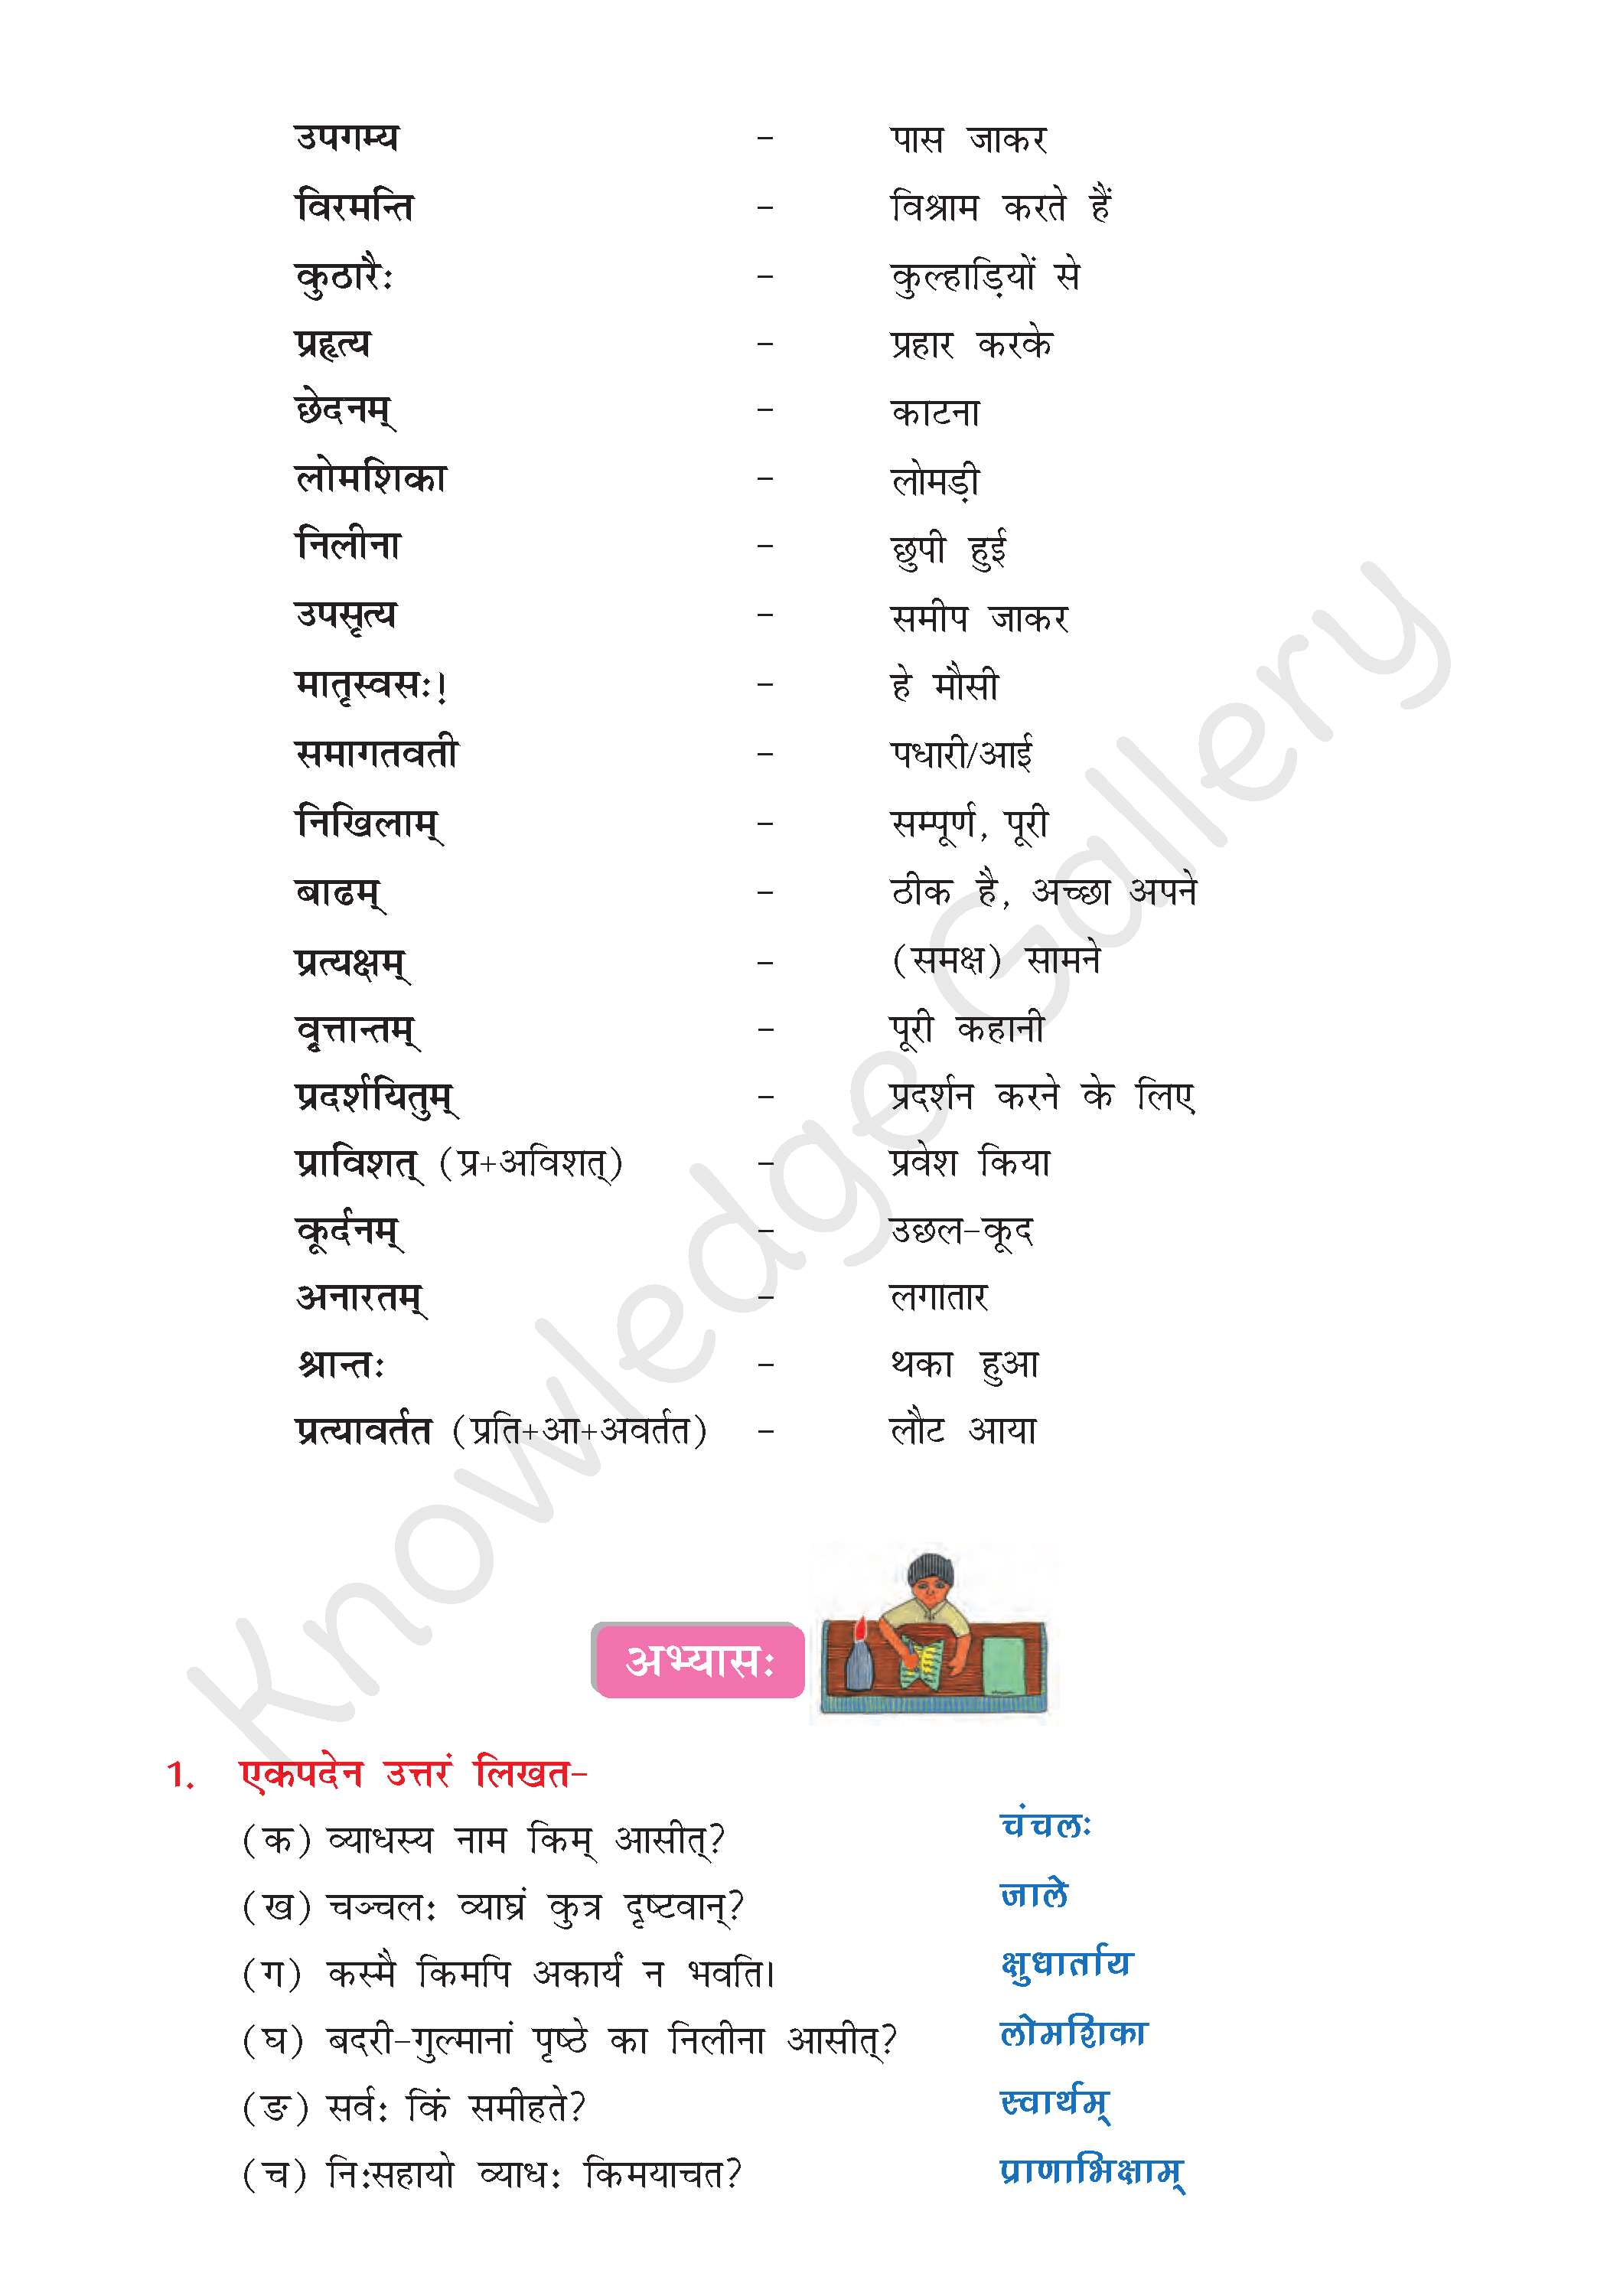 NCERT Solution For Class 8 Sanskrit Chapter 5 part 4